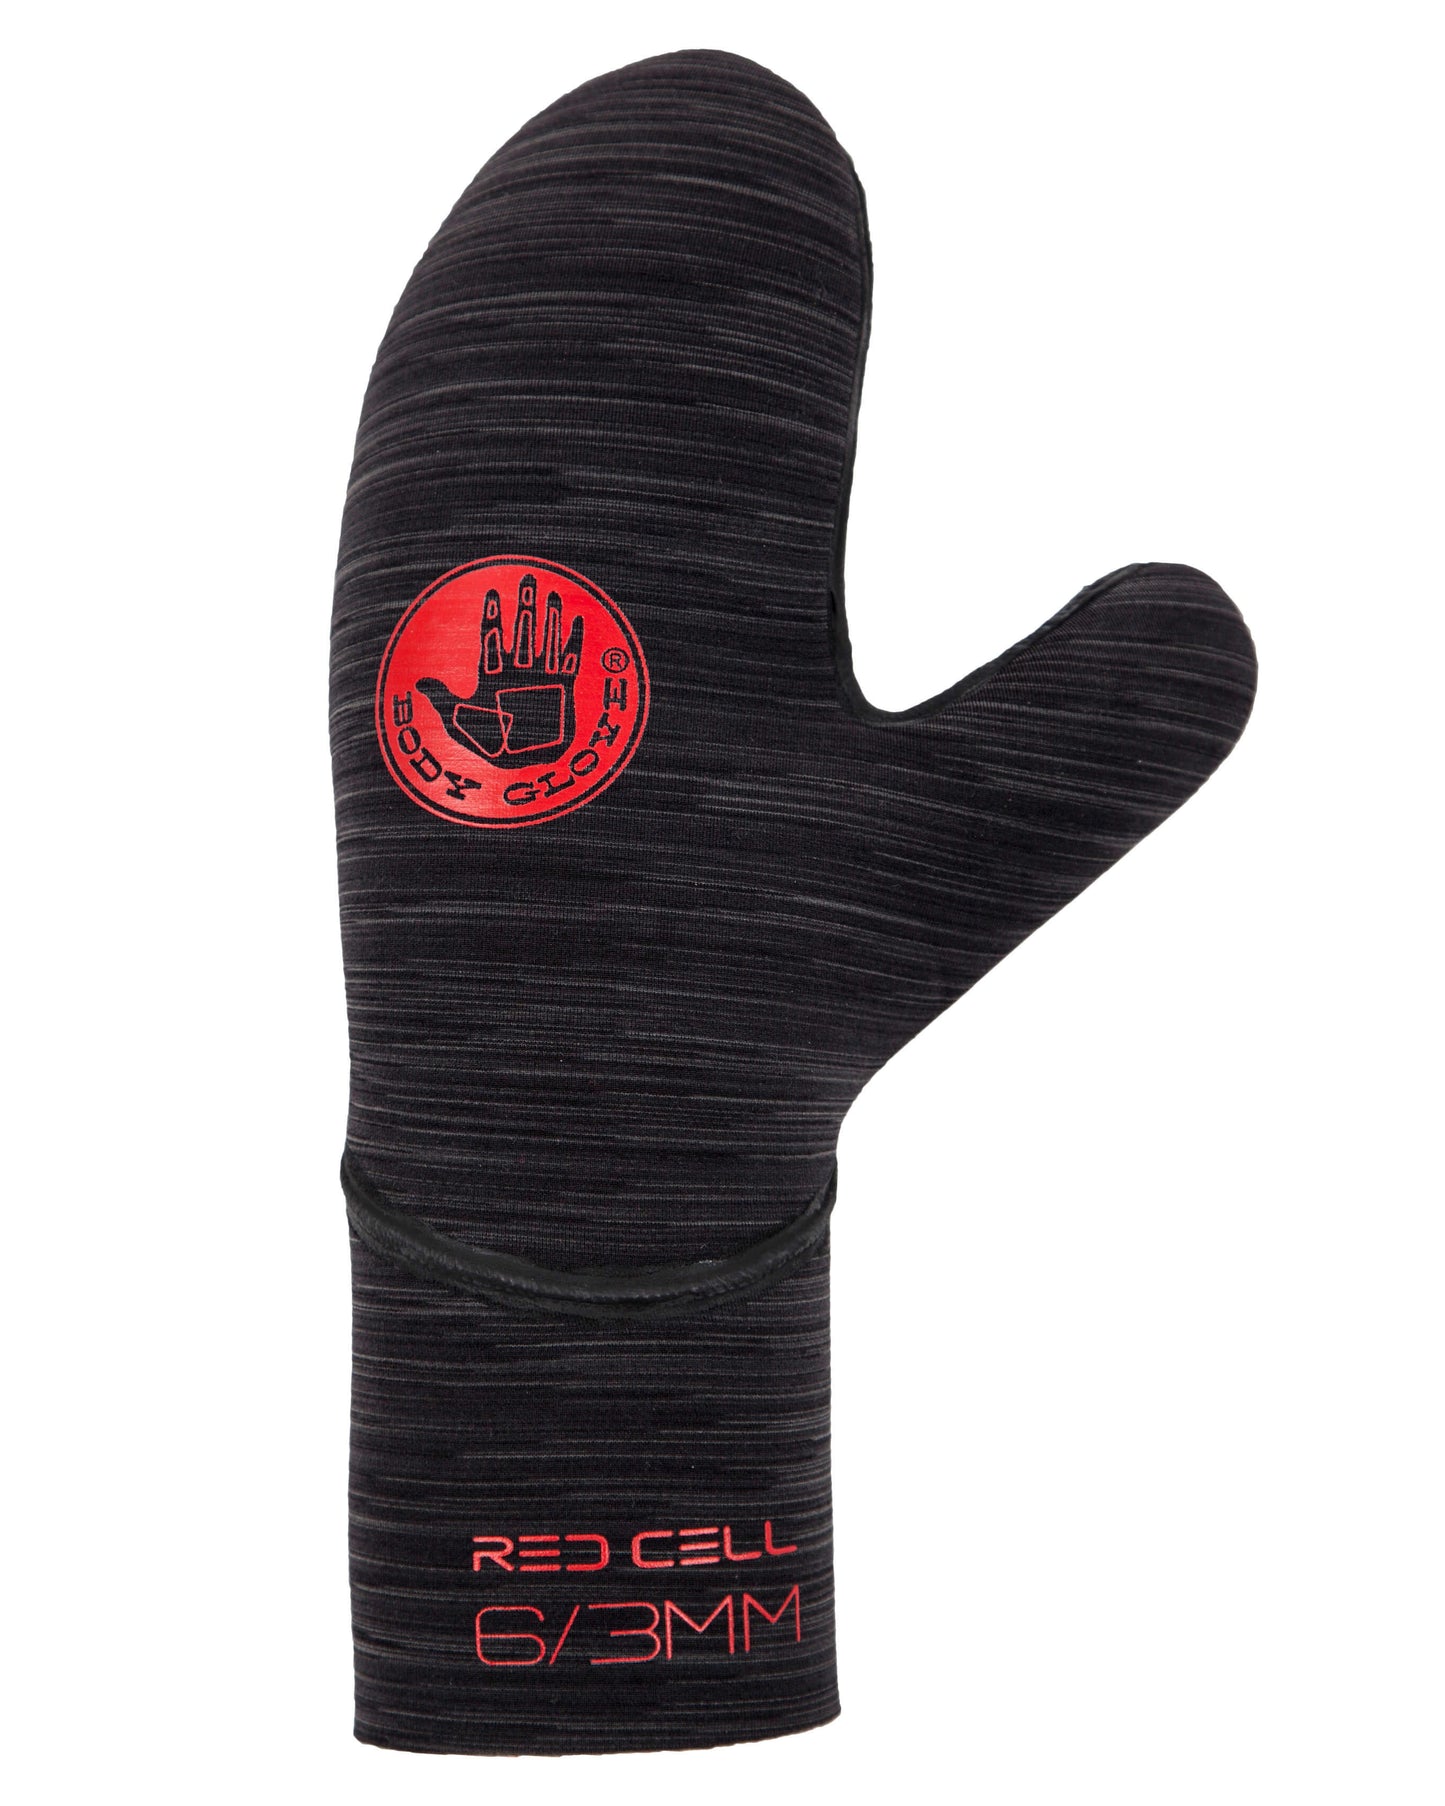 6/3mm Body Glove RED CELL Mitt Gloves